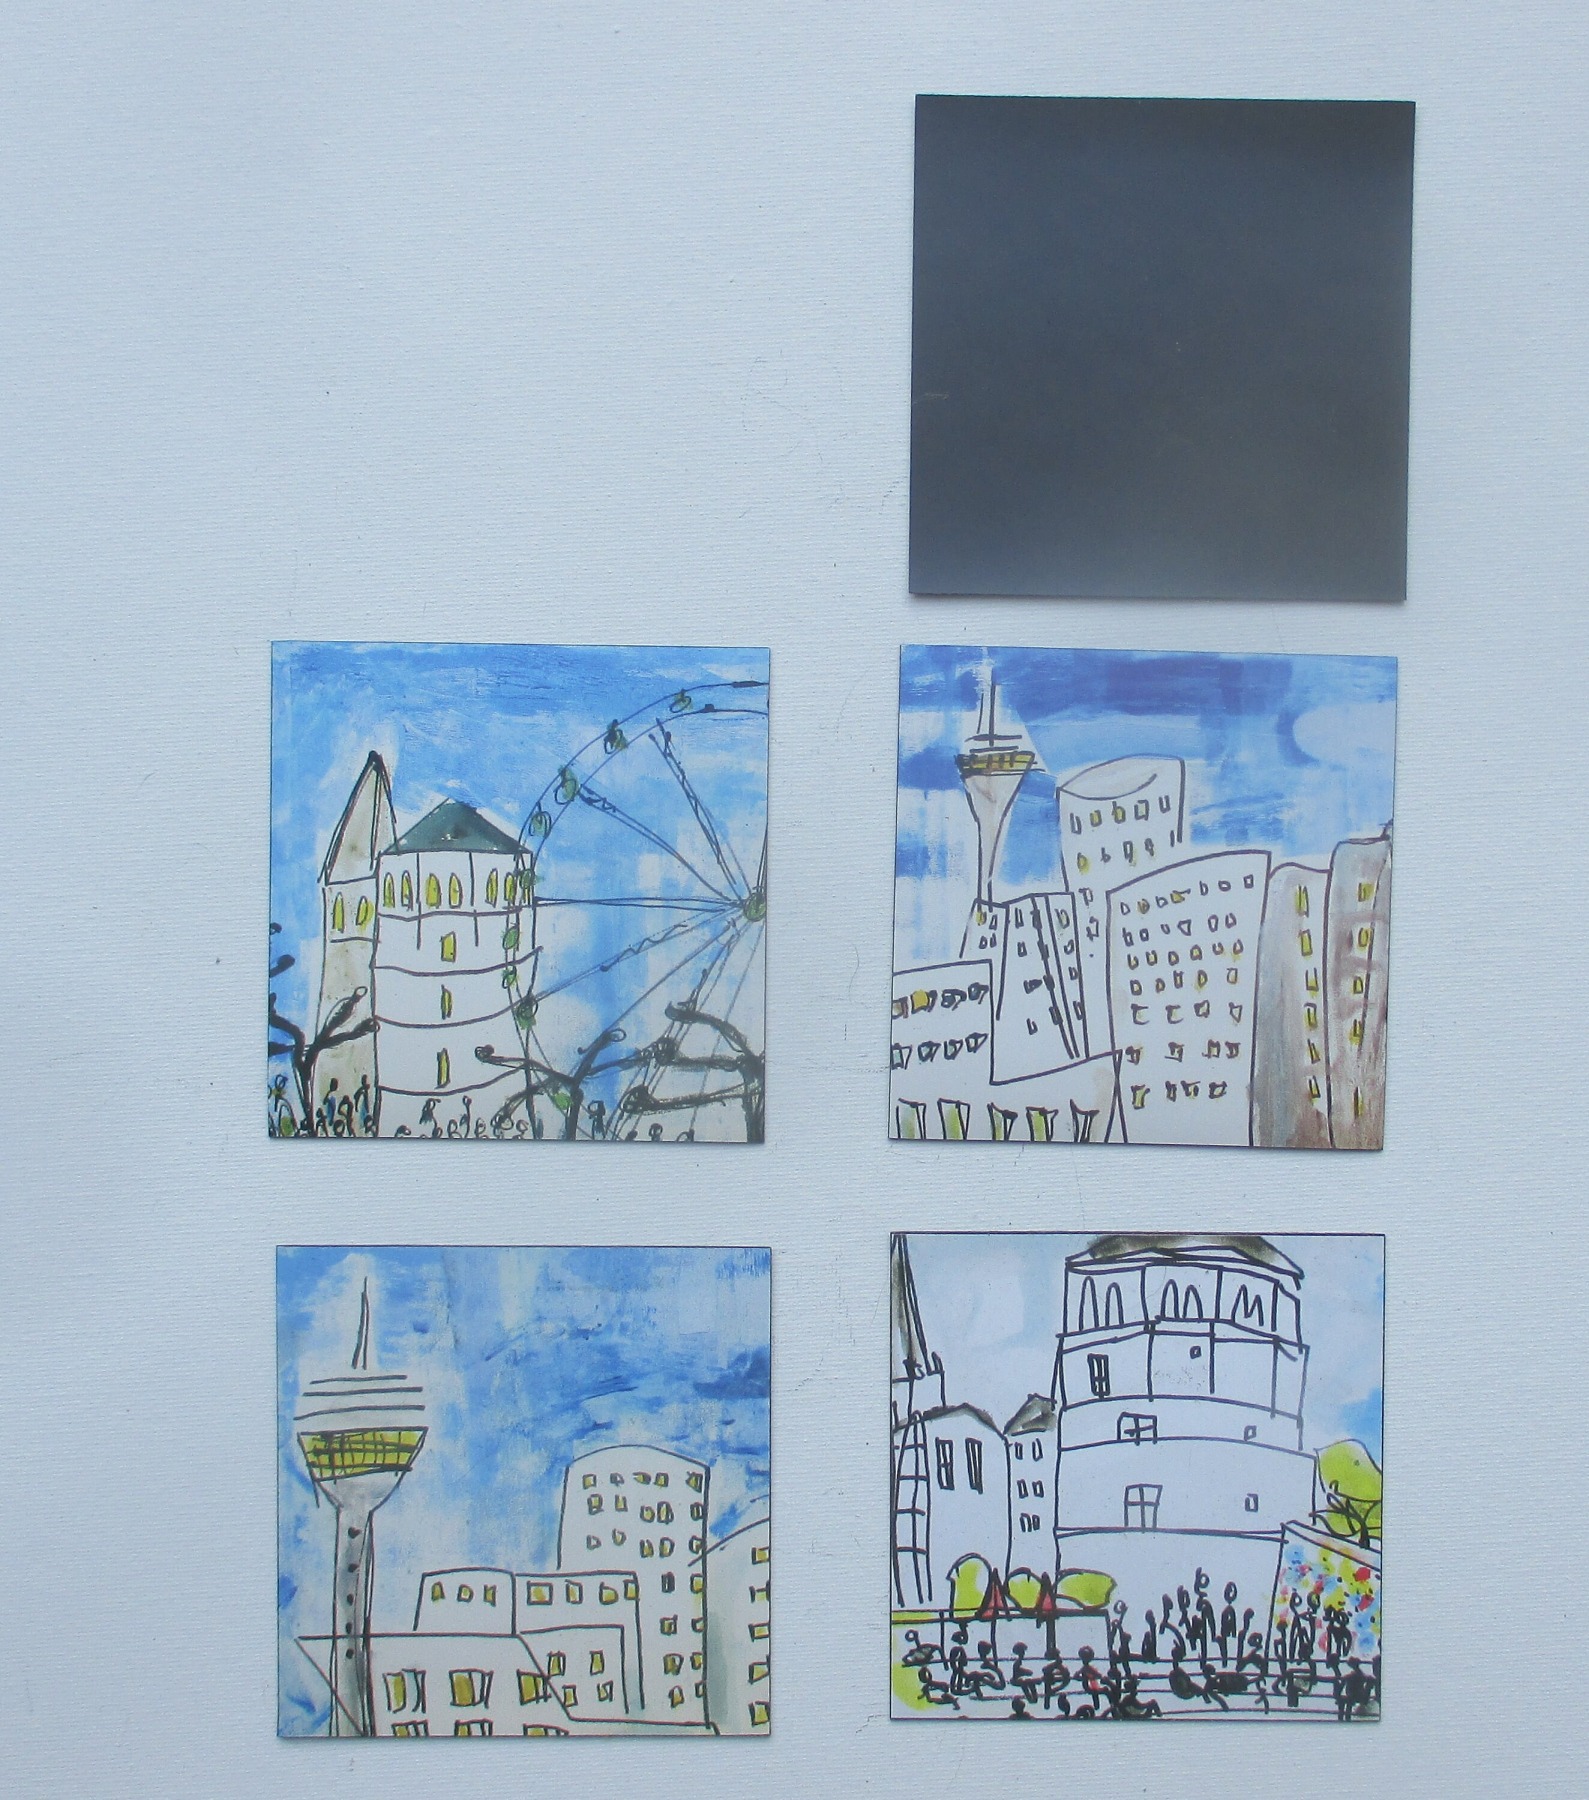 6 Düsseldorf -Szenen Burgplatz Turm je 10x10 cm auf Magneten gedruckt - signiert/x/10 numeriert